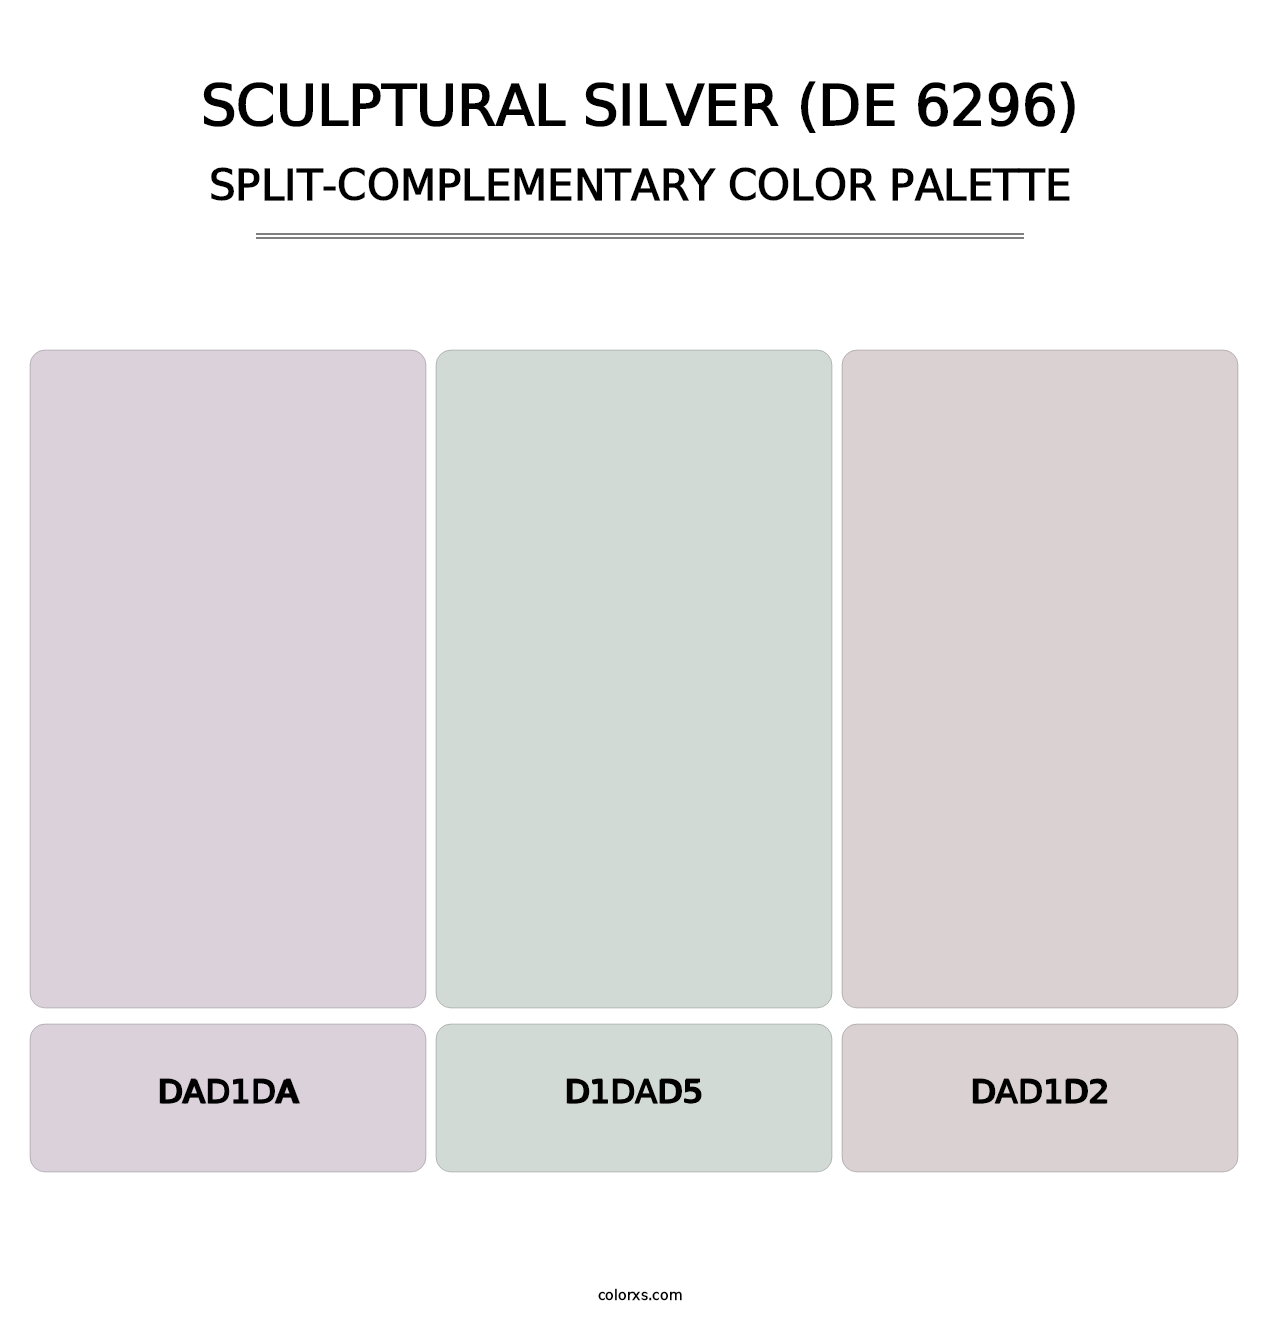 Sculptural Silver (DE 6296) - Split-Complementary Color Palette